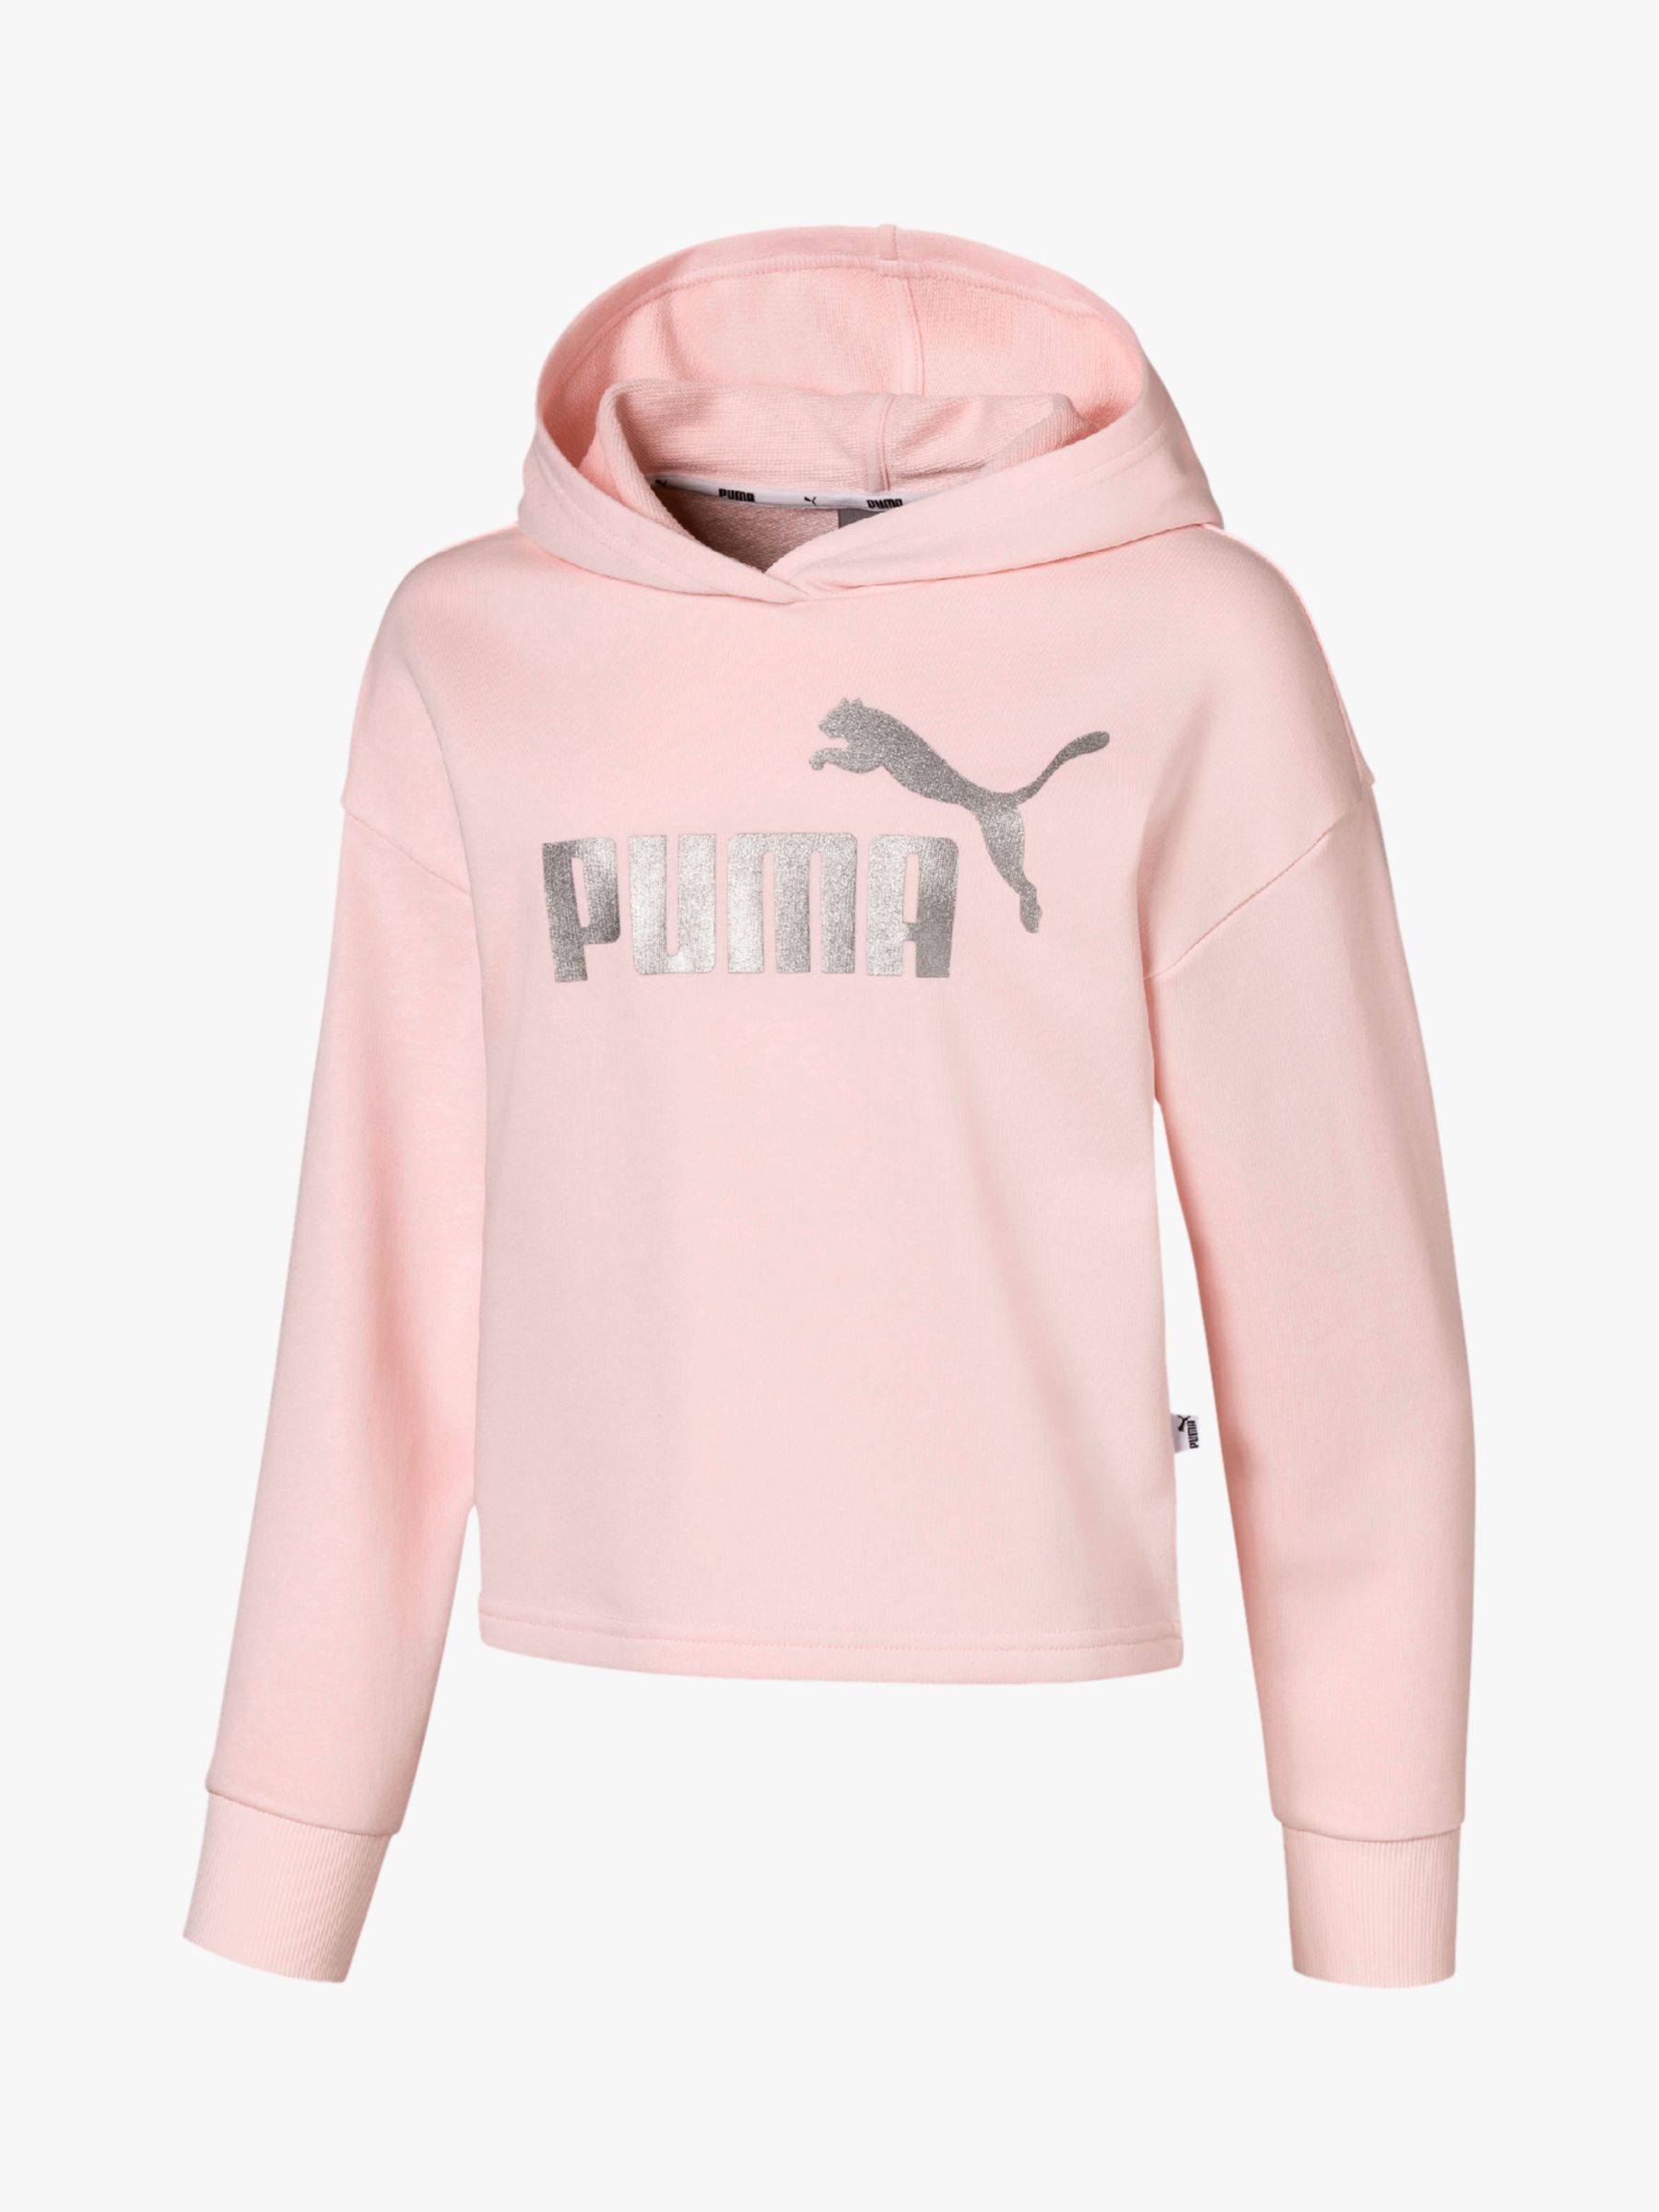 pink puma jumper mens